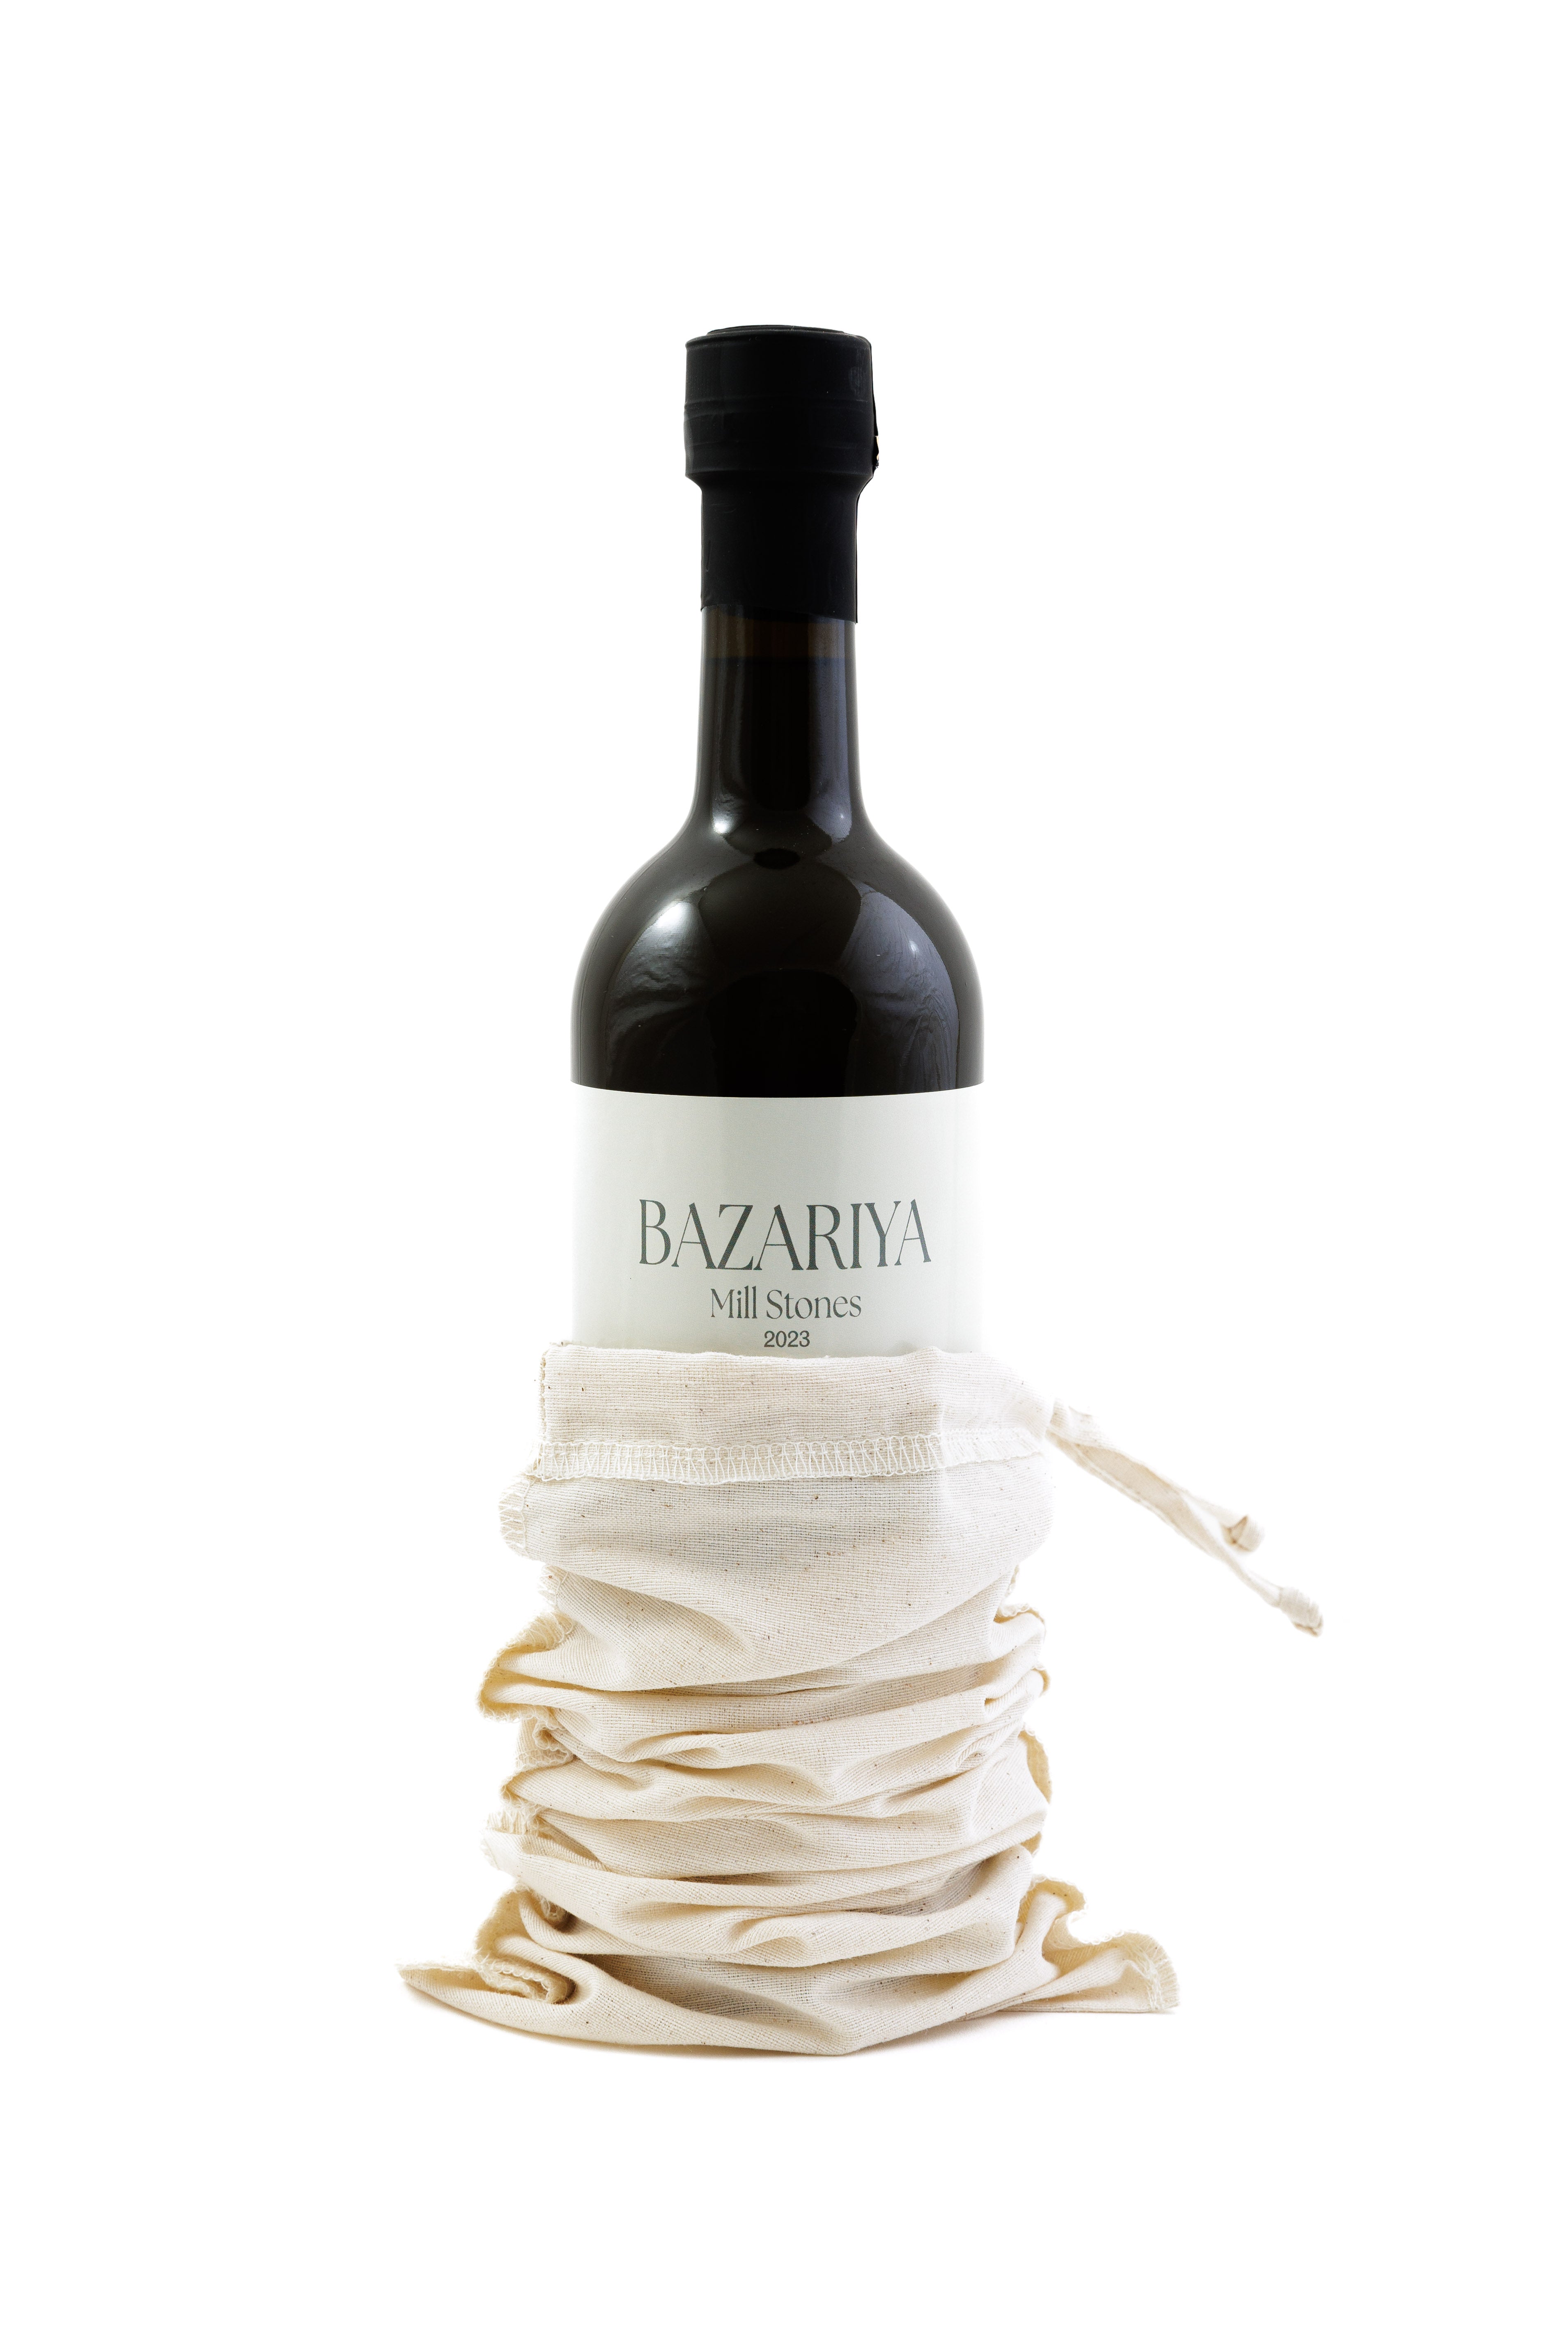 Bazariyas Millstone-extrahiertes Olivenöl – aromatisch, pikant und fruchtig [Erntejahr: 2023]